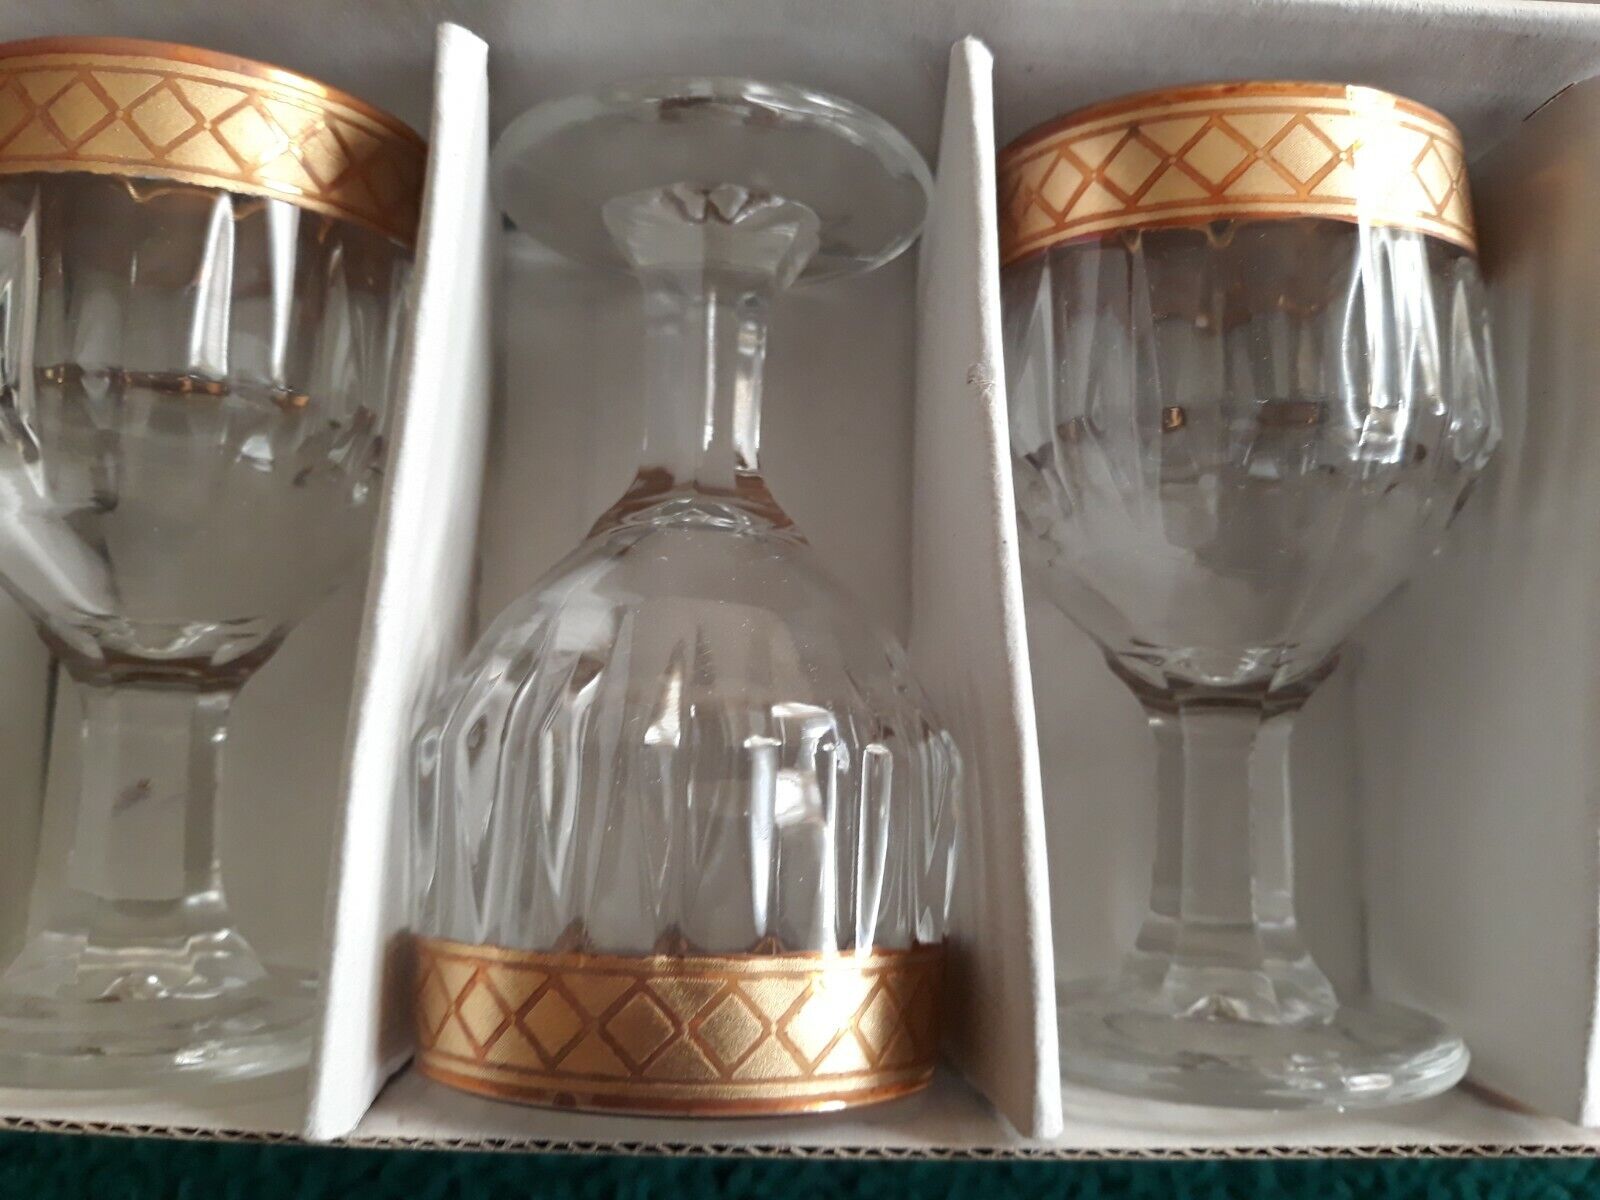 7-pc Le Gioie Wine Set Crystal Glass Decanter Gold Rim Italy Le Gioie - фотография #5